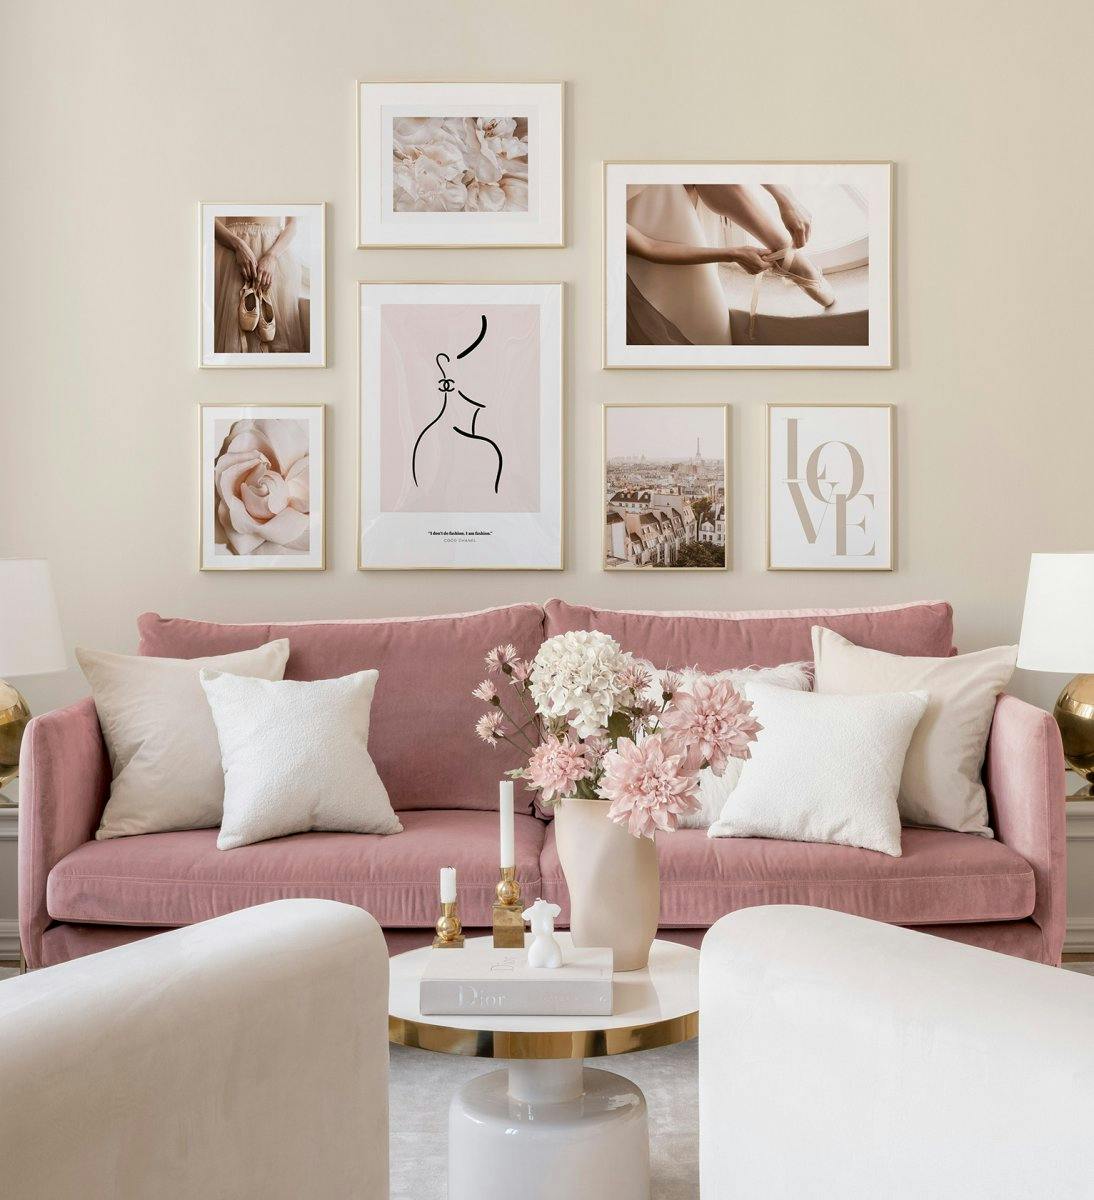 Stilig bildevegg til stuen i rosatoner presentert i gullrammer.